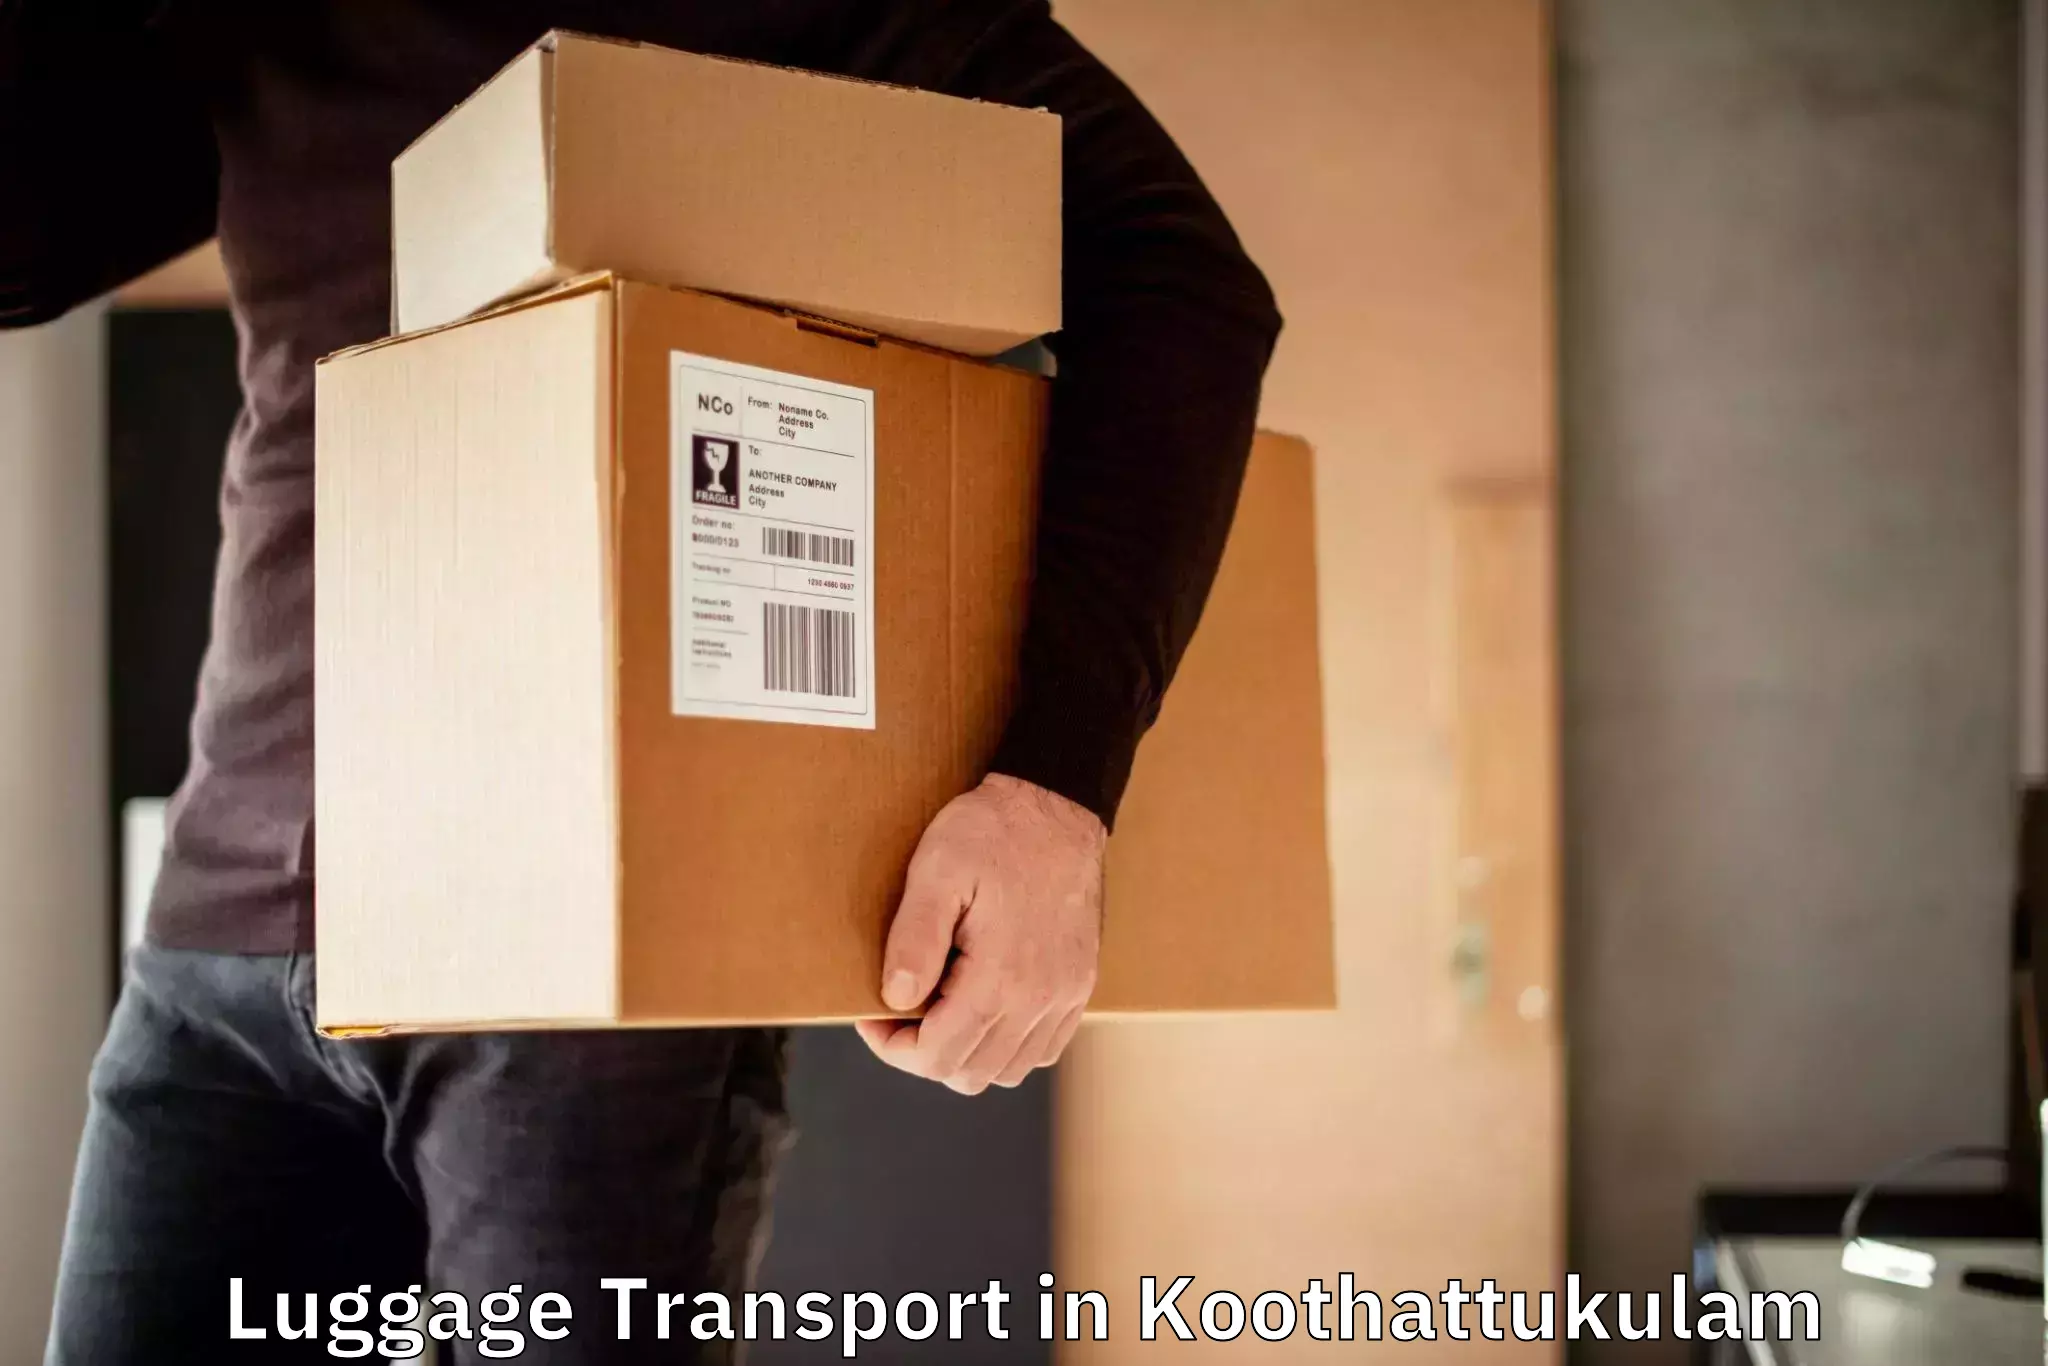 Rural baggage transport in Koothattukulam